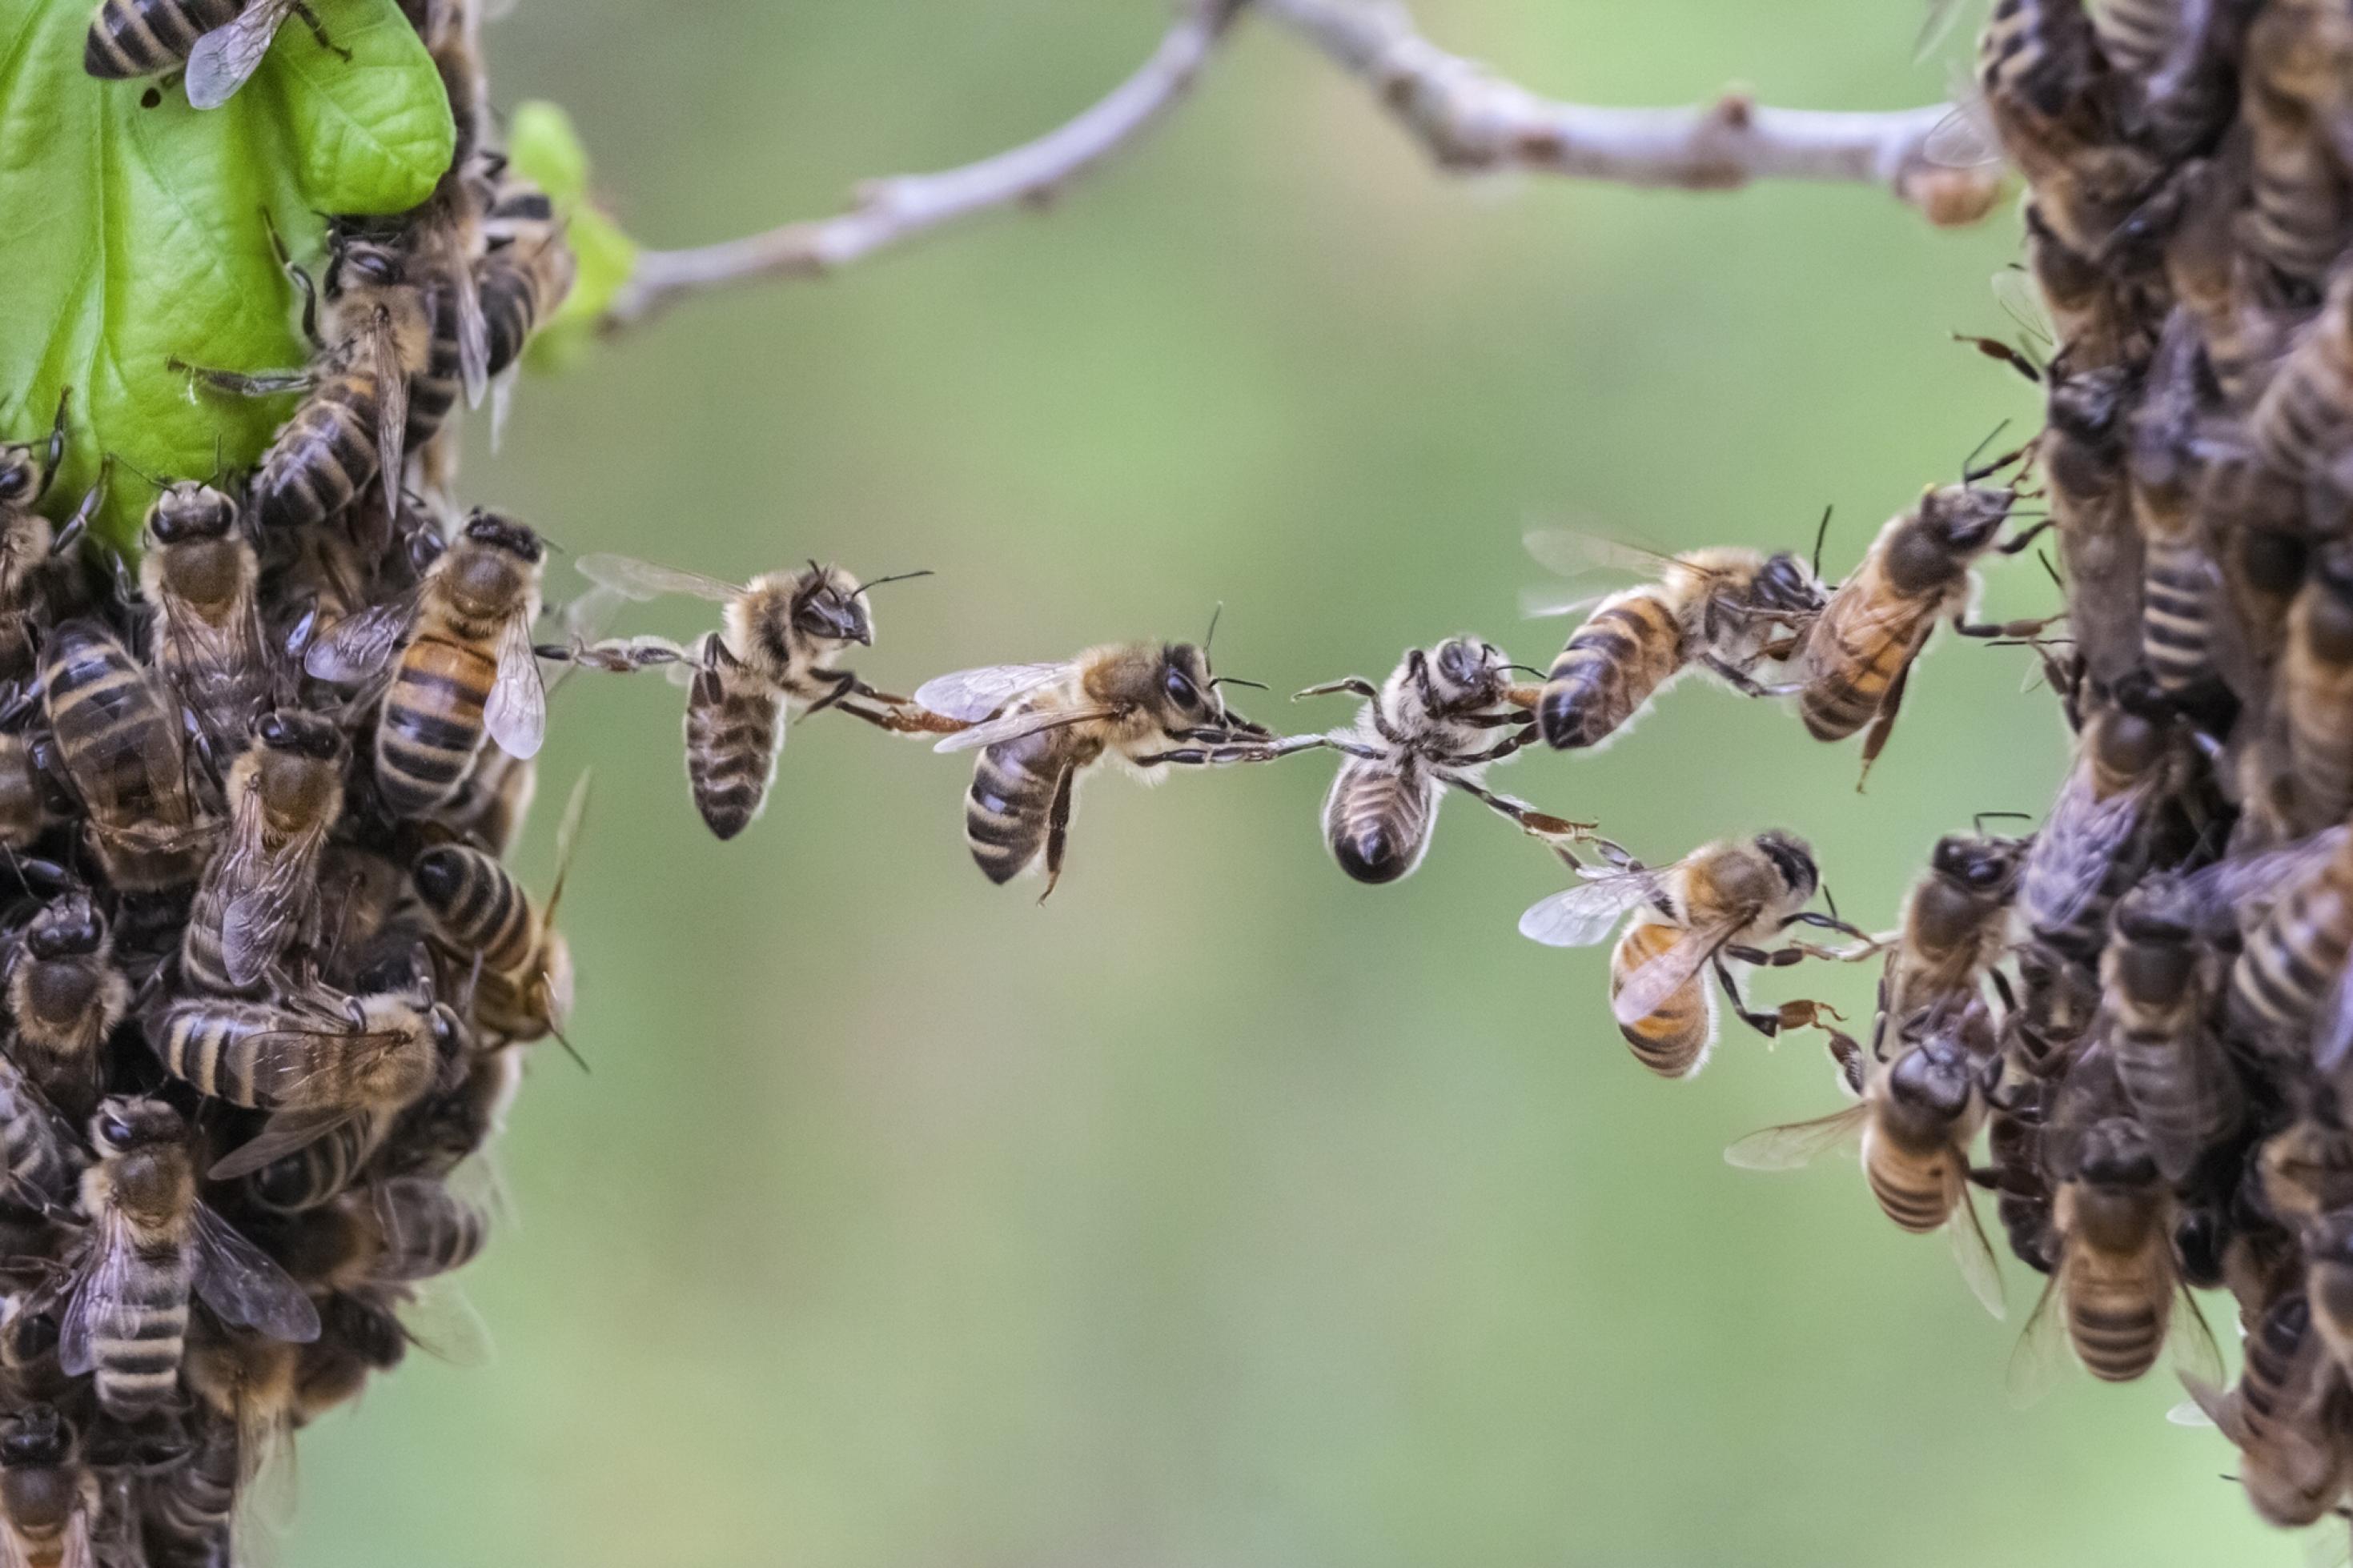 Bienen bilden mit ihren Körpern eine Brücke zwischen zwei Teilen eines Bienenschwarms. KI-Forscher wollen sich von Intelligenzleistungen lebender Organismen inspirieren lassen.